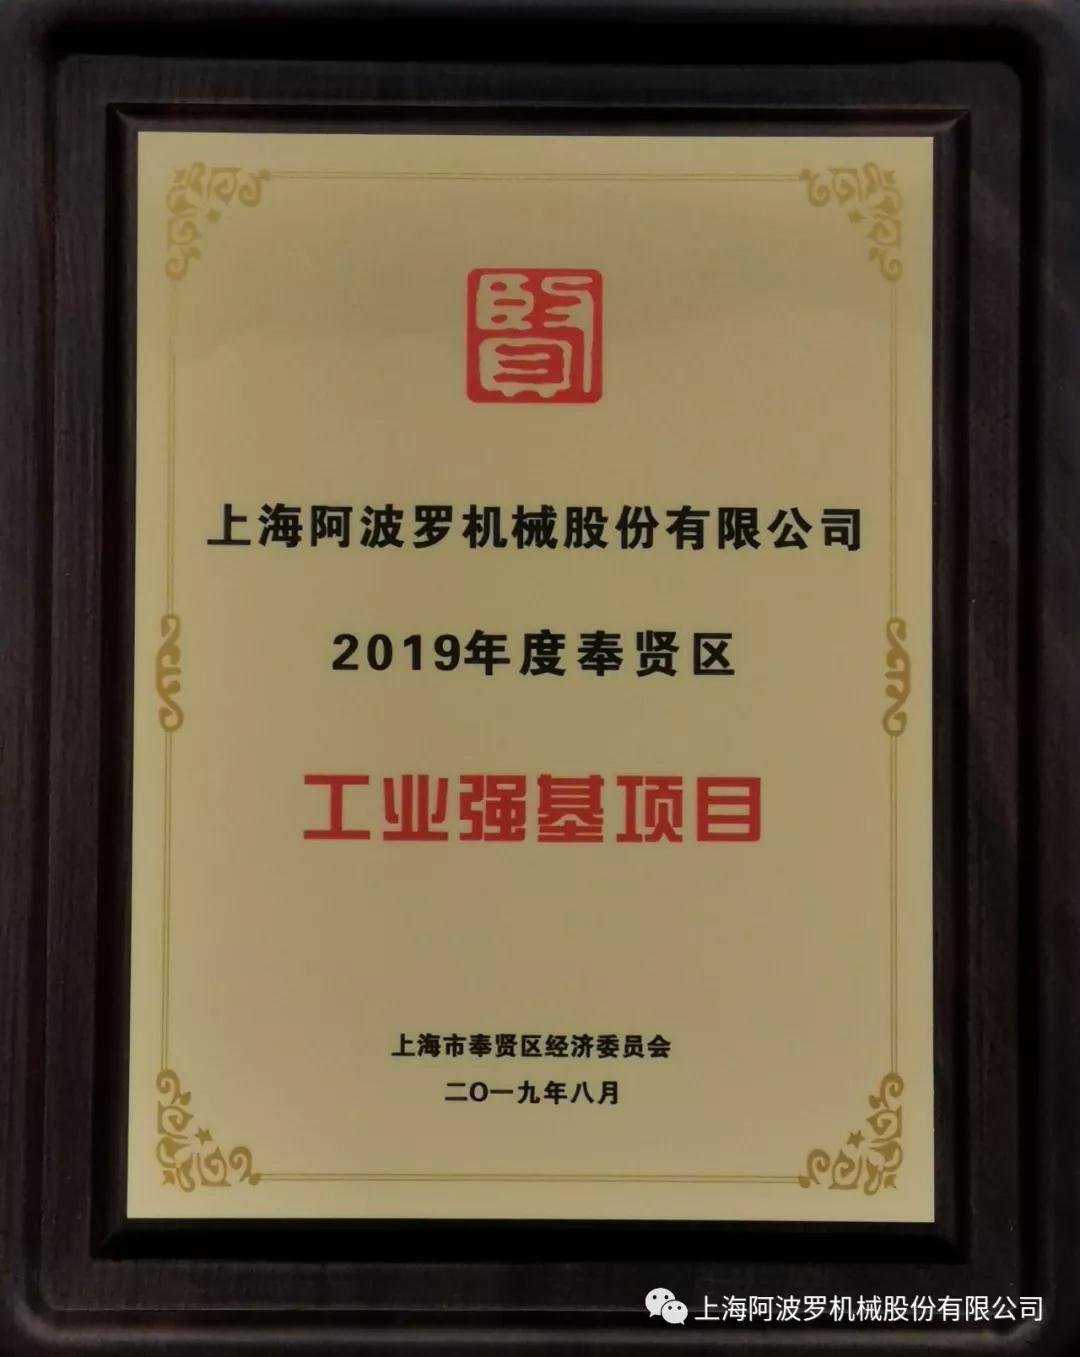 上海阿波罗机械股份有限公司成功获评2019年度奉贤区工业强基项目